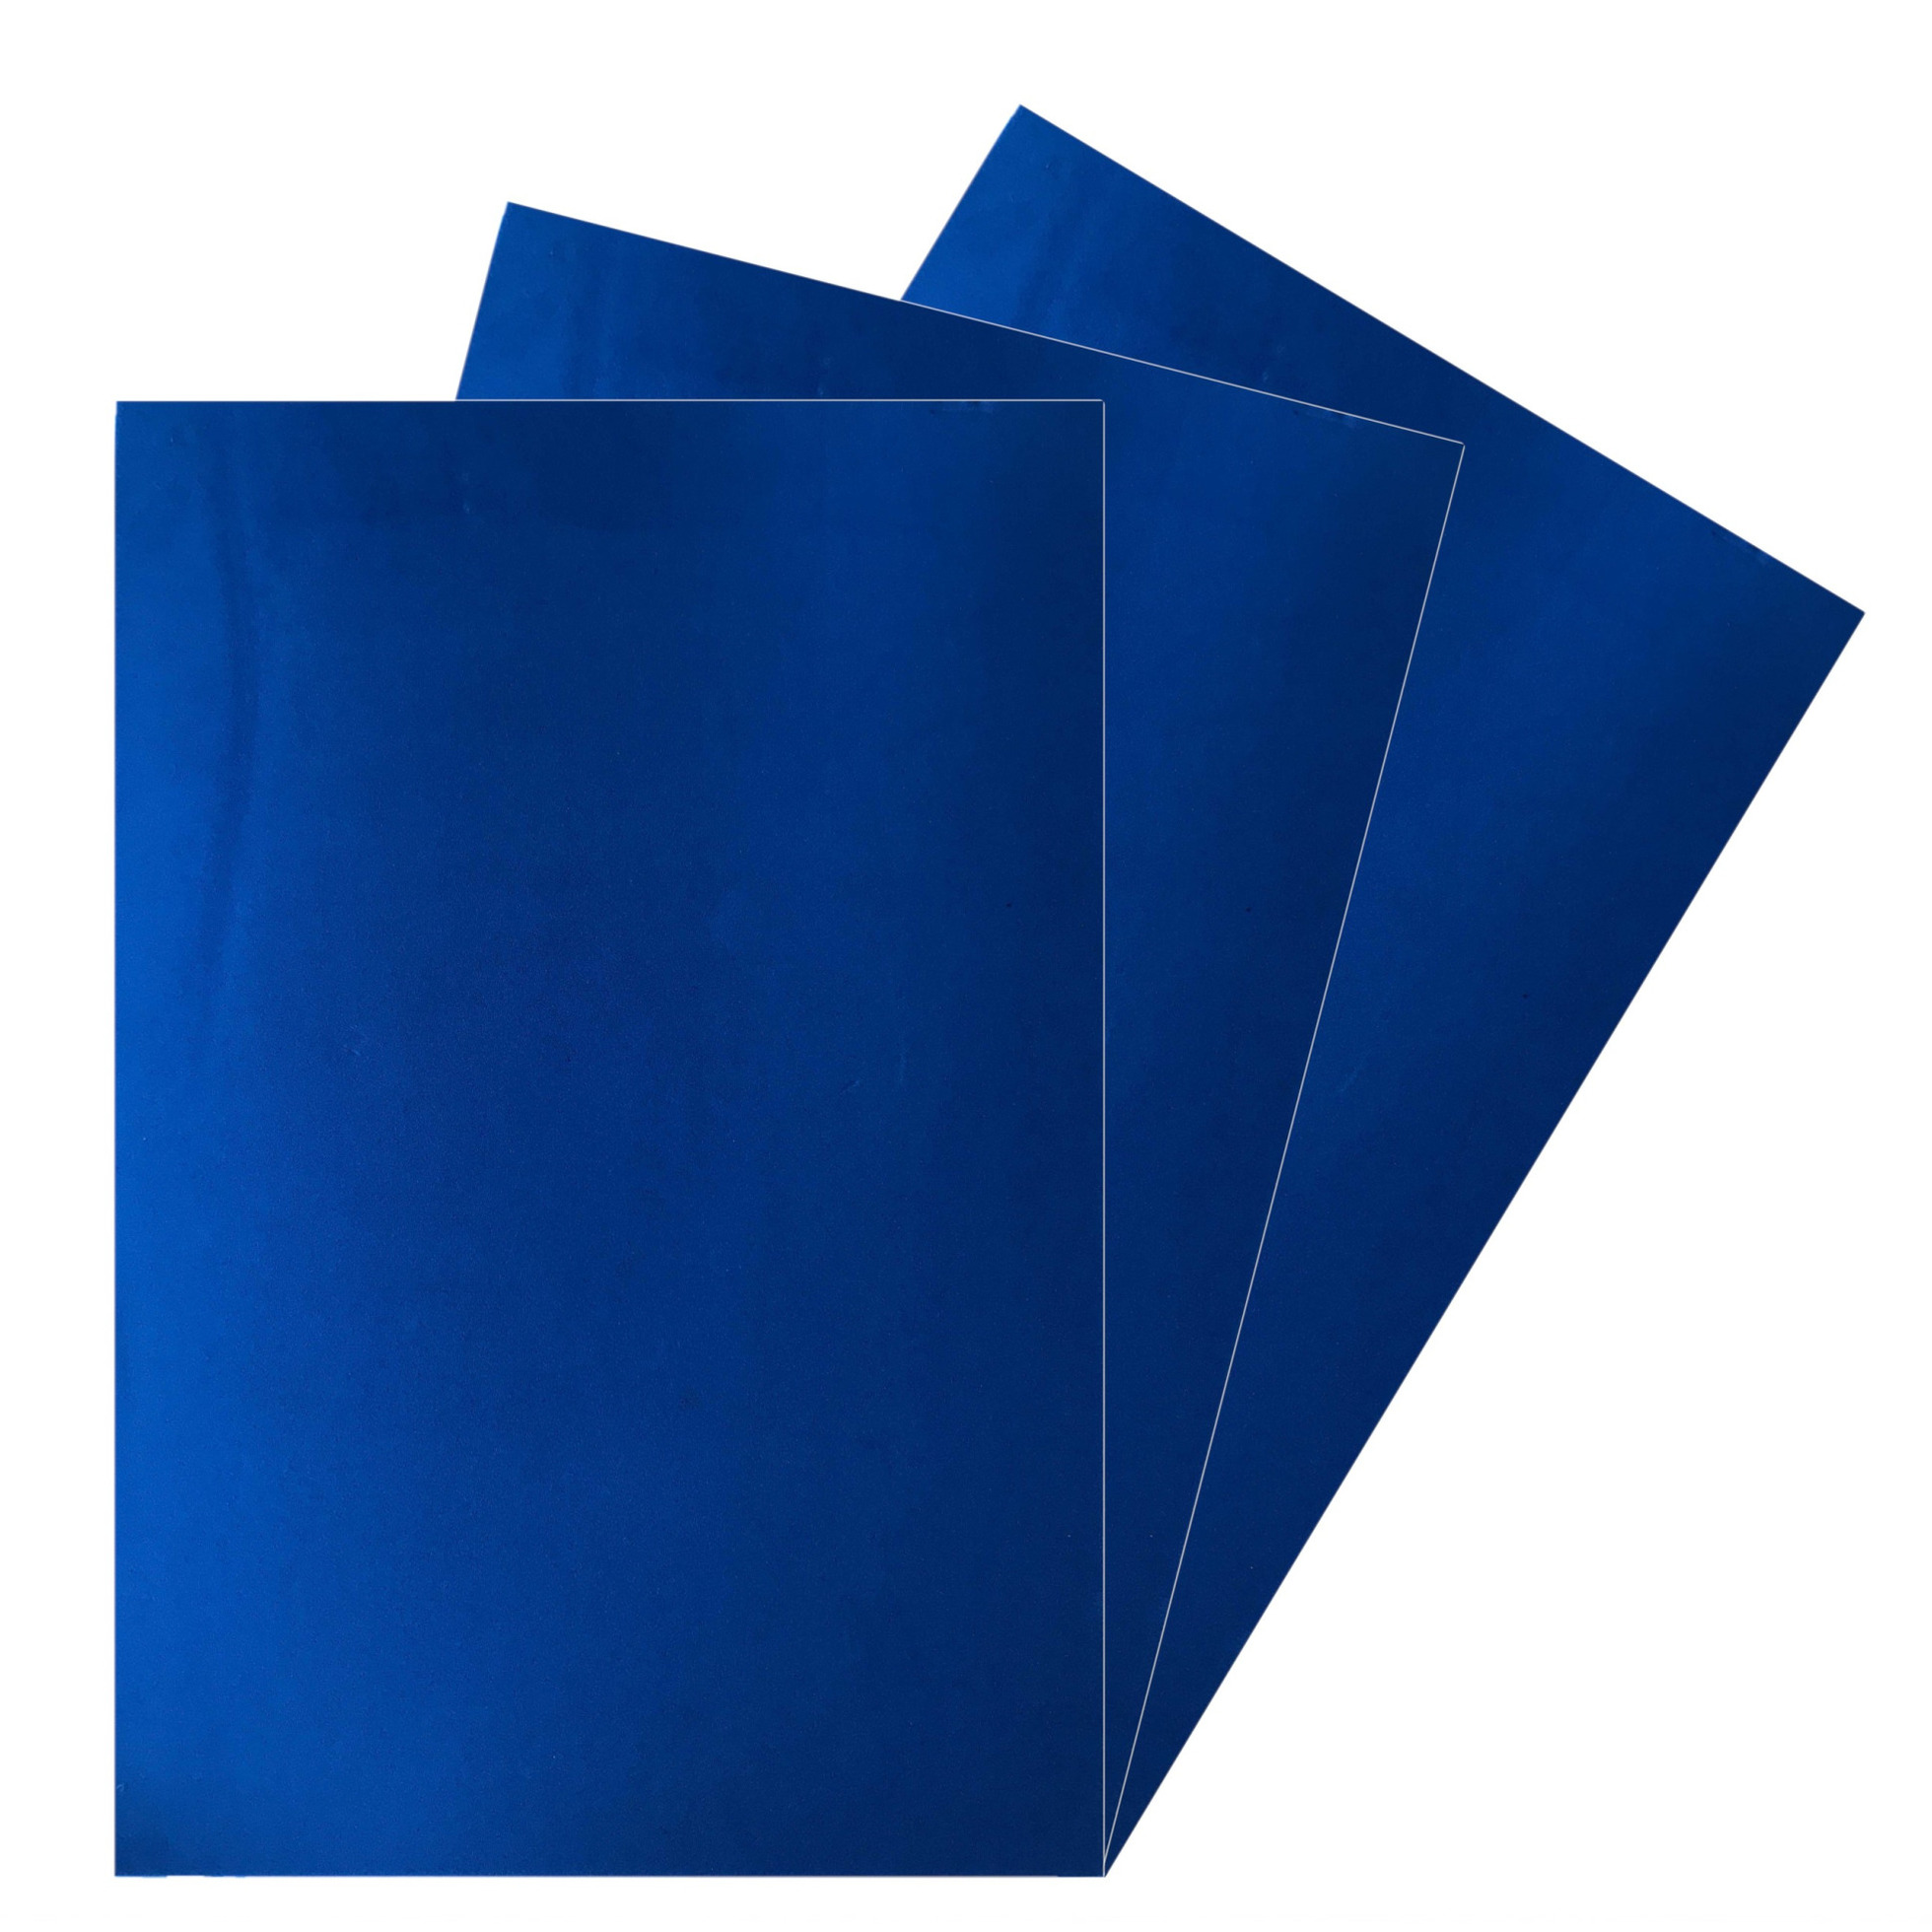 10x Vellen crepla knutsel foam rubber blauw 20 x 30 cm